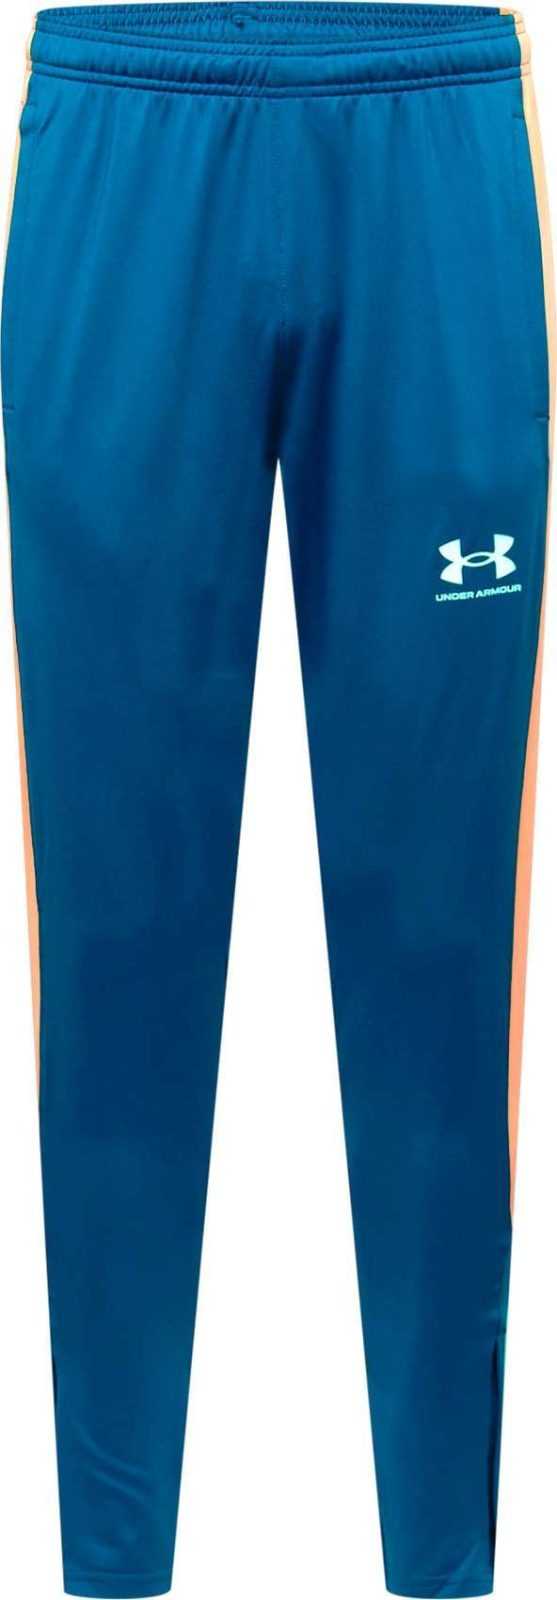 UNDER ARMOUR Sportovní kalhoty 'Challenger' modrá / oranžová / bílá